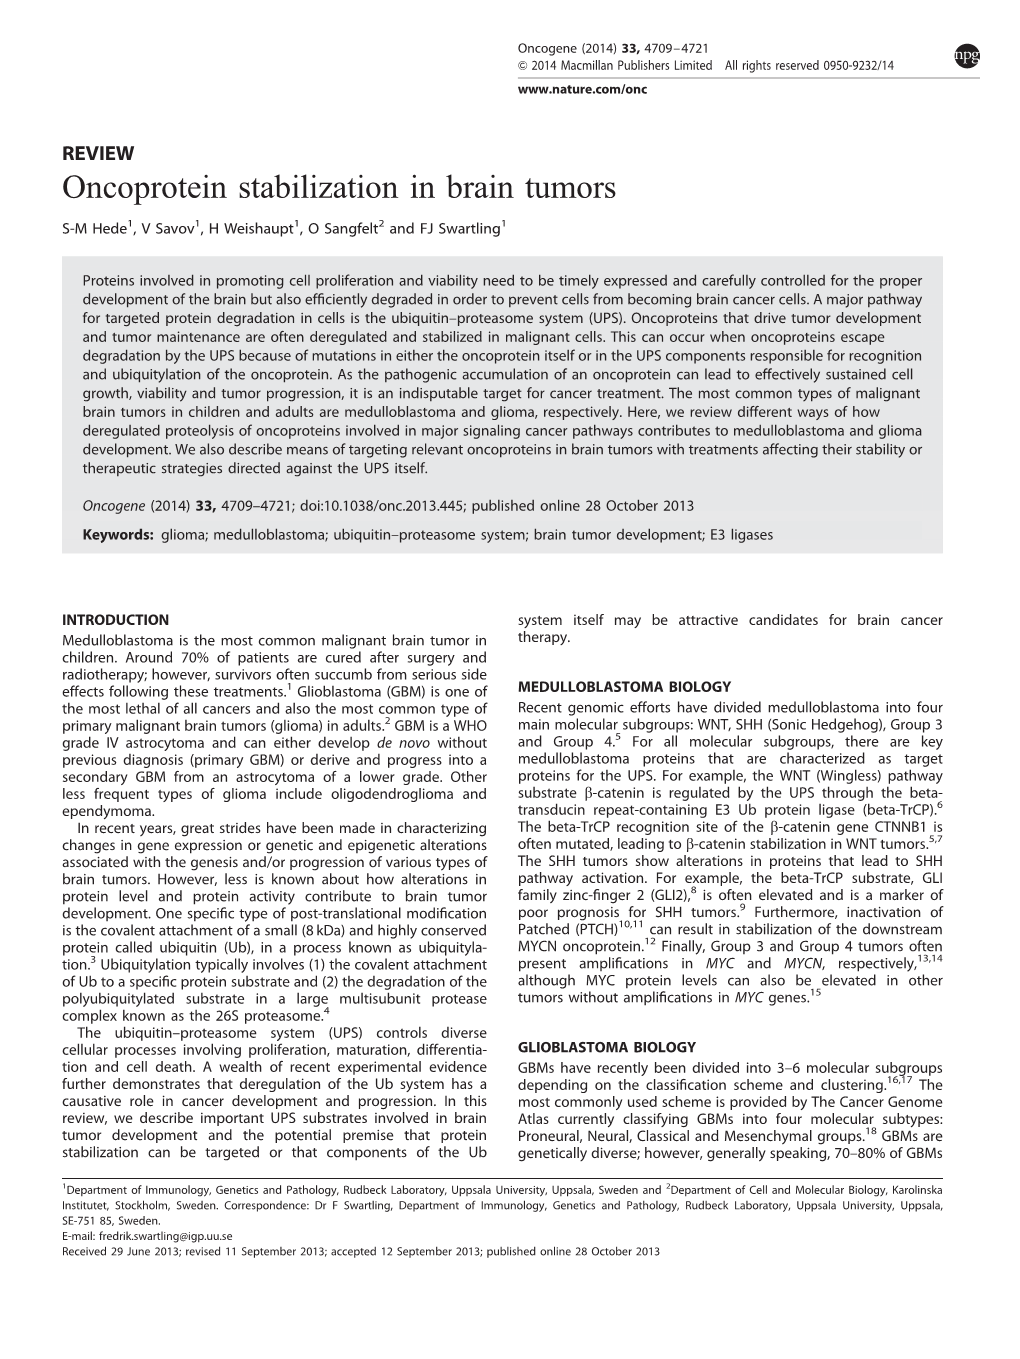 Oncoprotein Stabilization in Brain Tumors